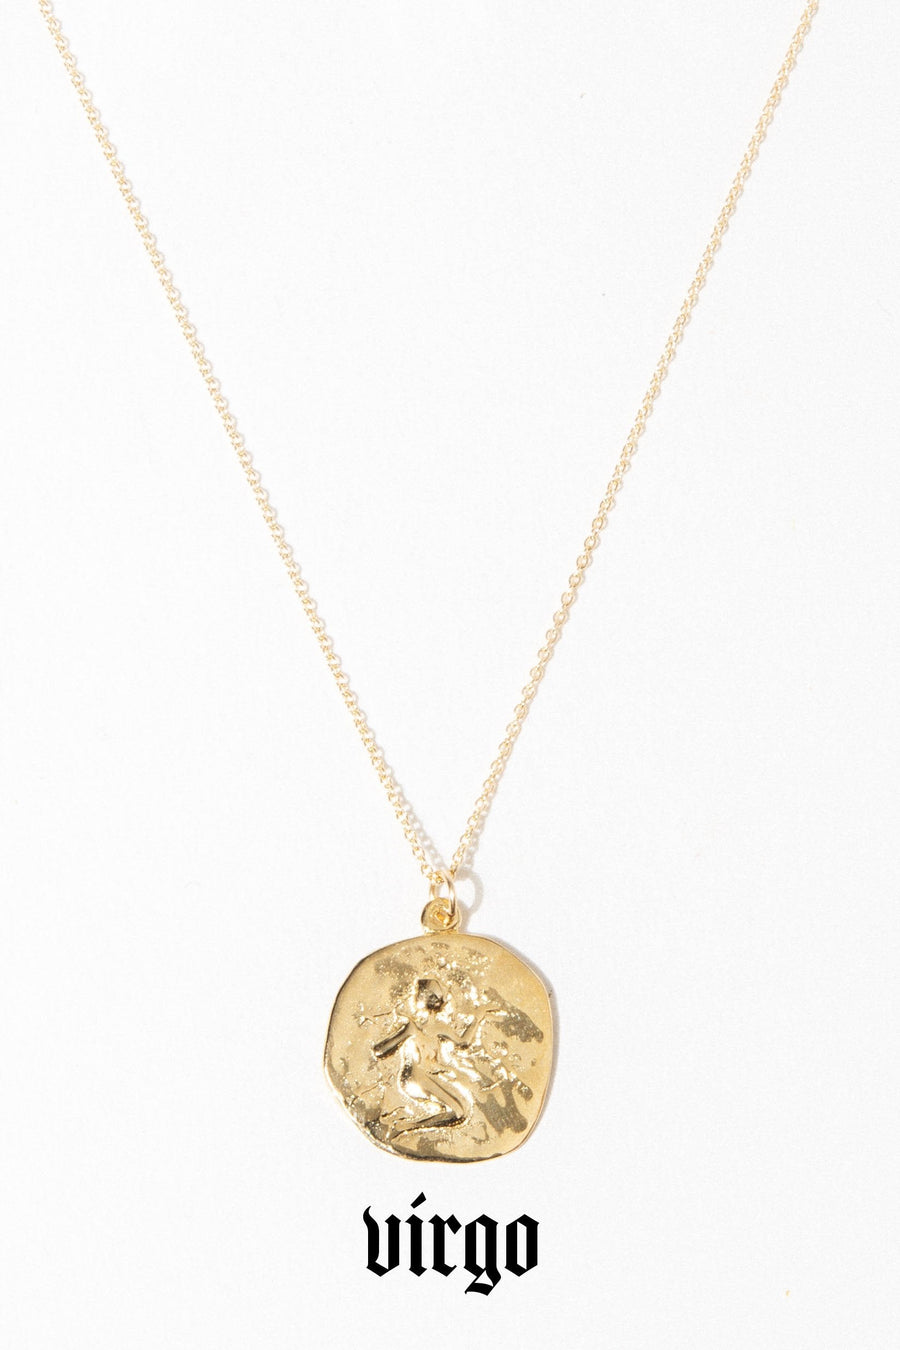 Studio Grun Jewelry Virgo / Gold / 20 inches Zodiac Necklace